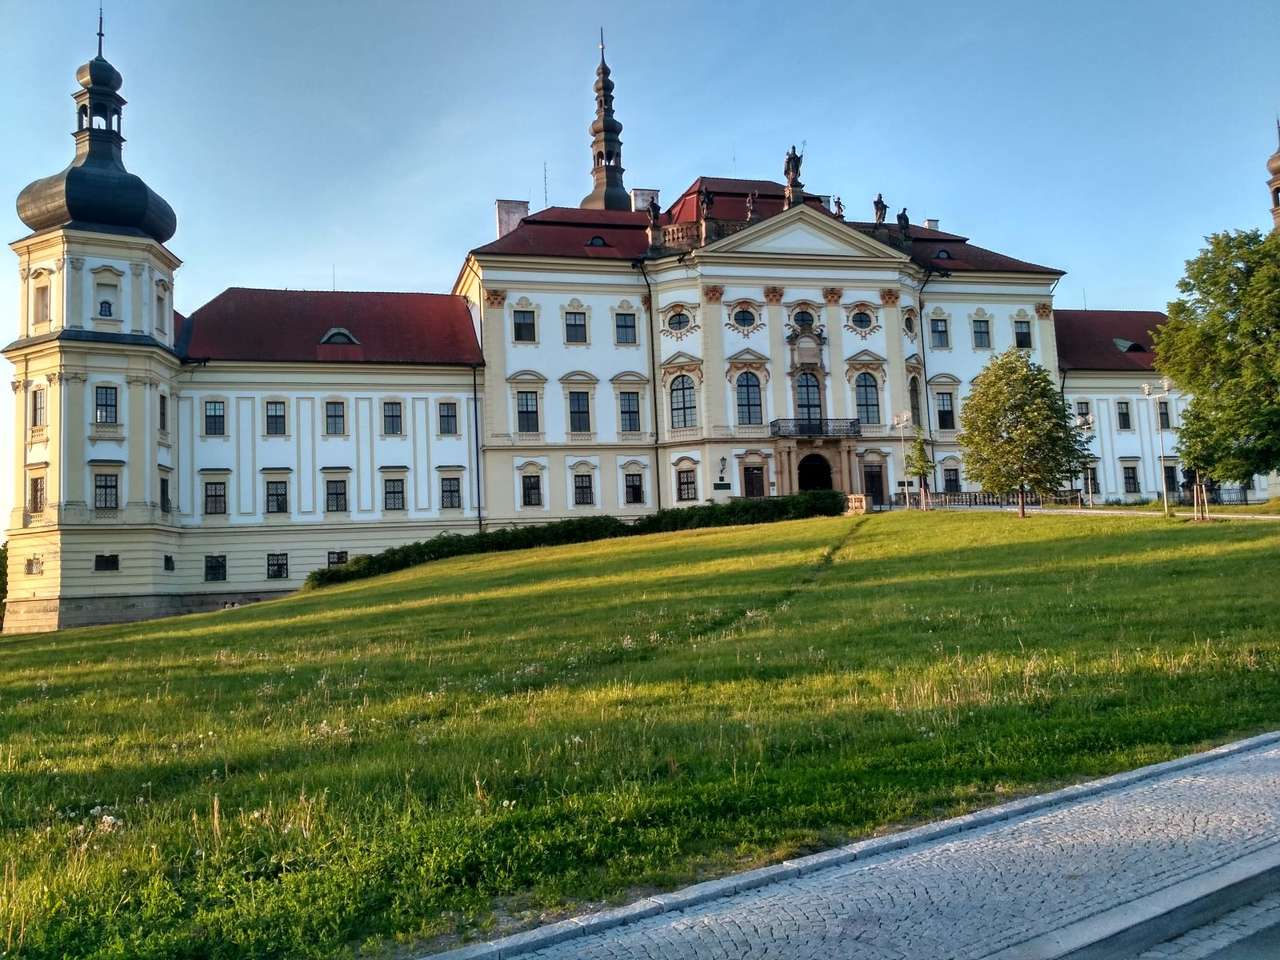 Olomouc kloster Tjeckien pussel på nätet